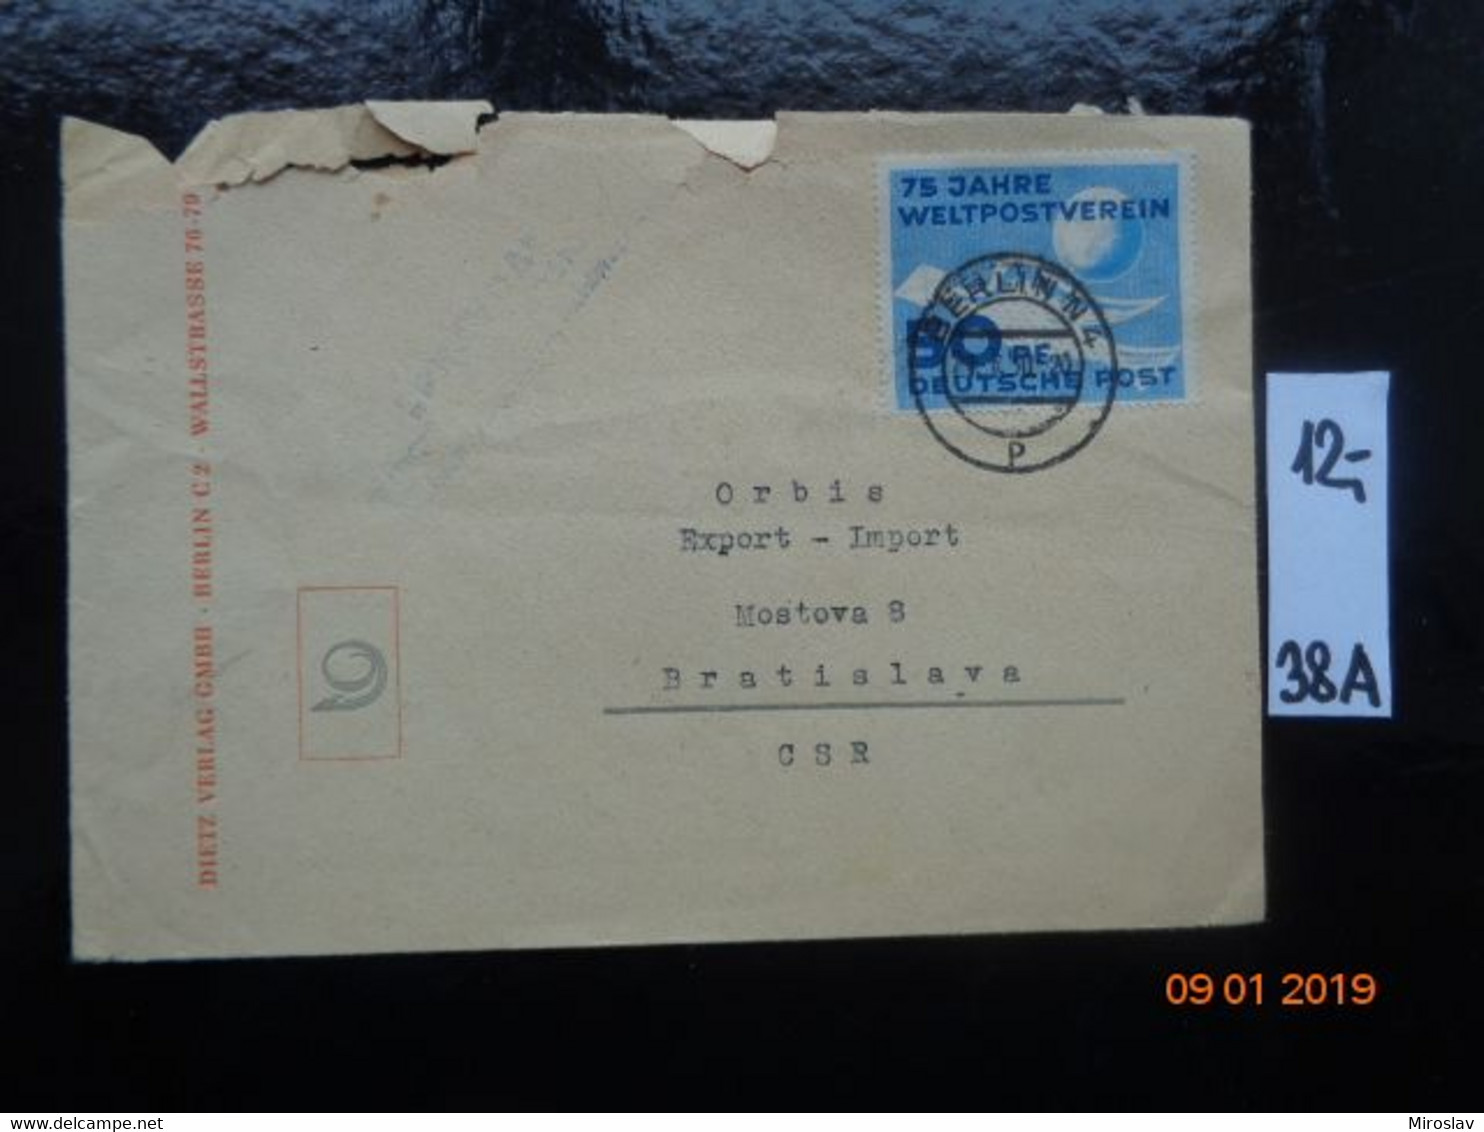 DDR  -   Známka 24,00 € - Briefomslagen - Gebruikt